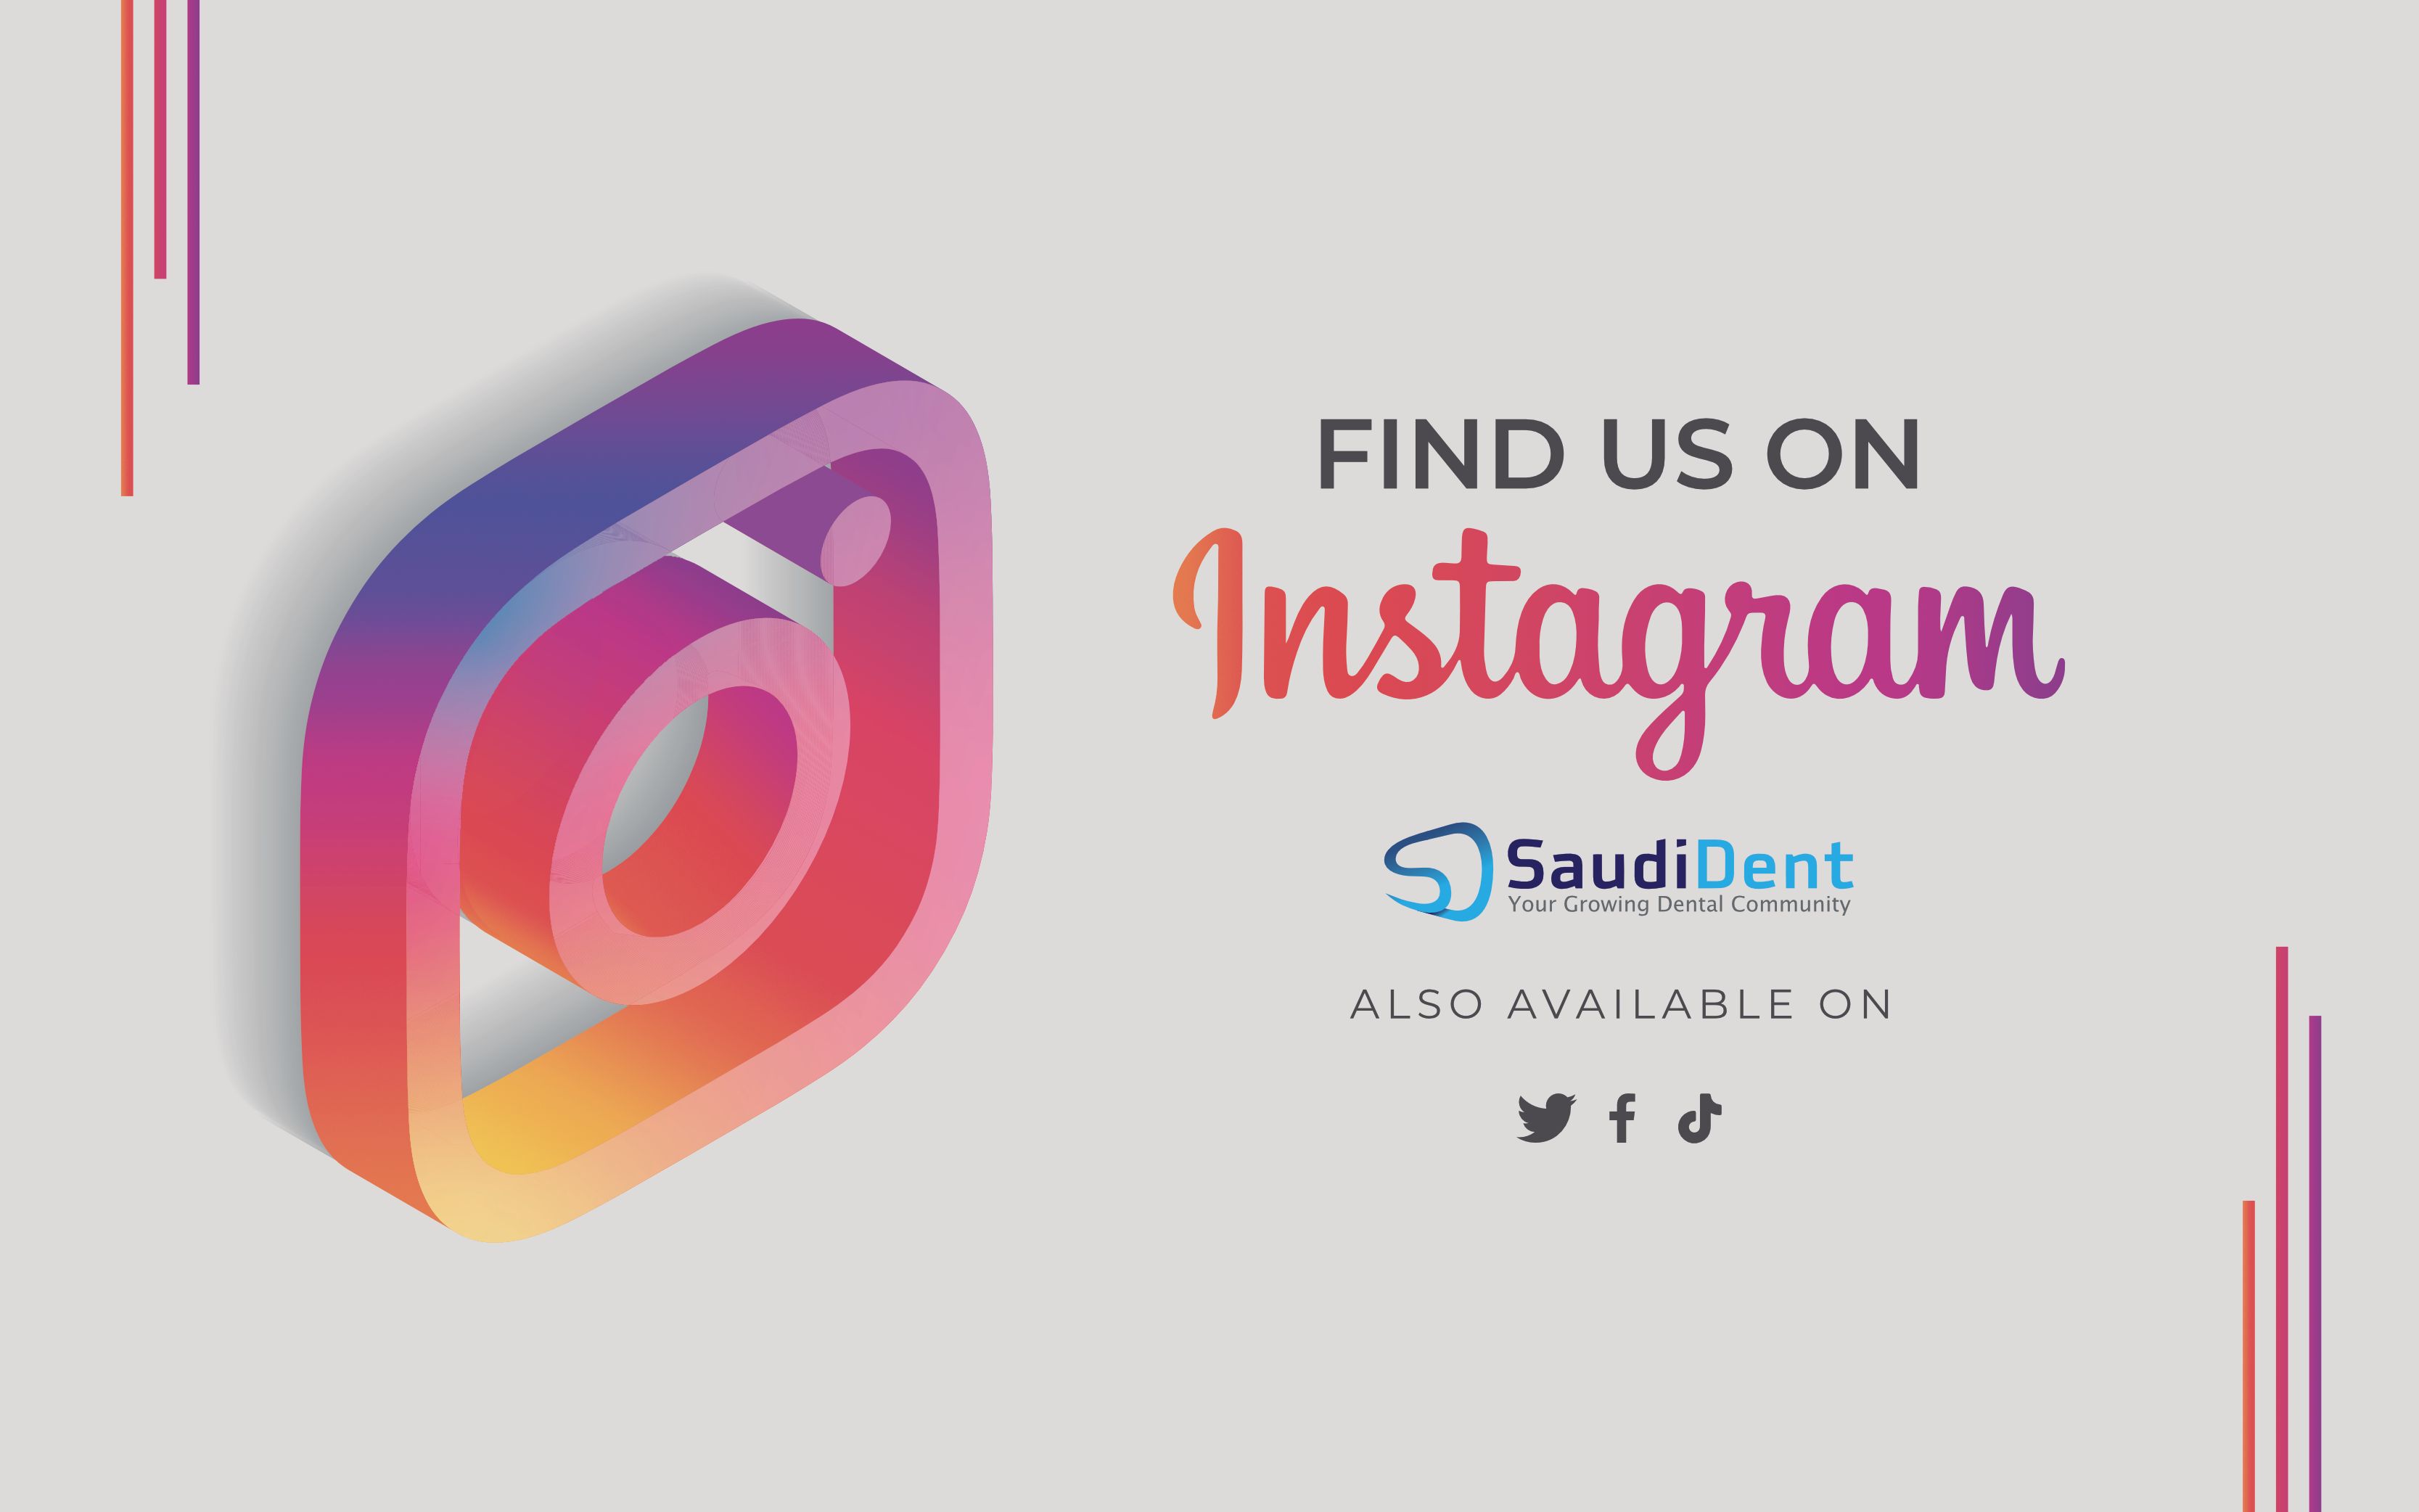 Find us on Instagram